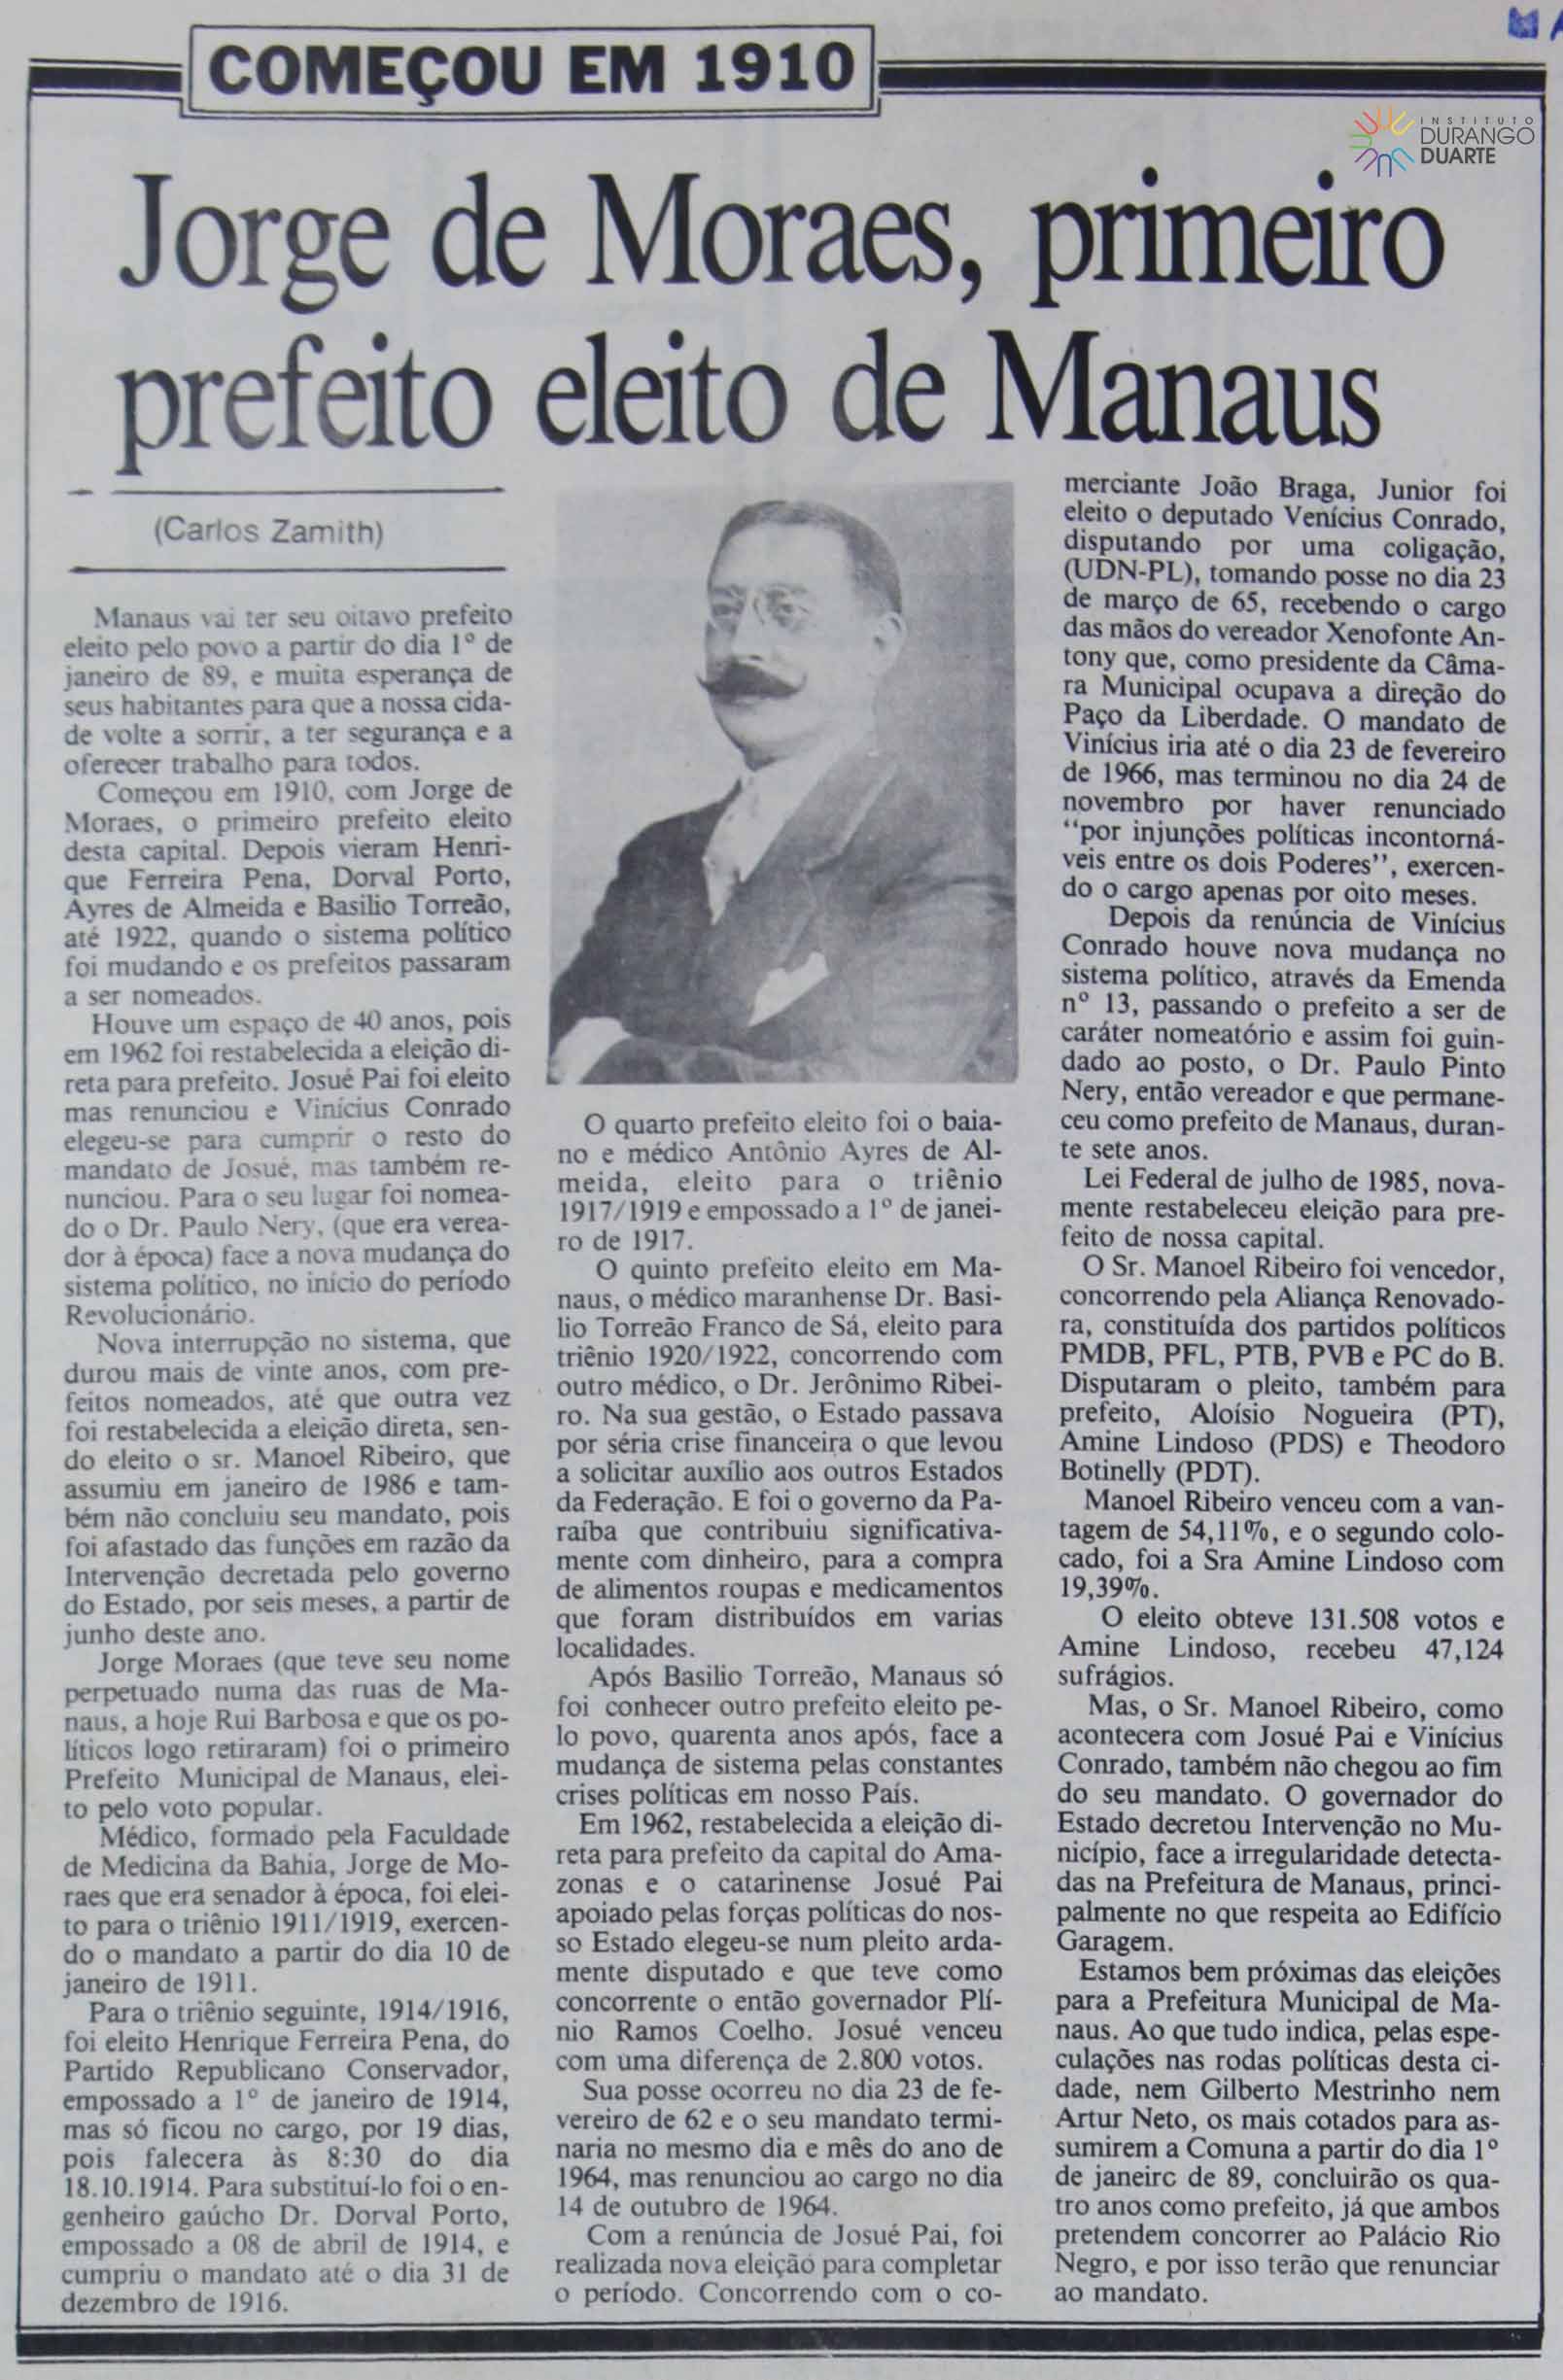 Jorge de Moraes, primeiro prefeito eleito de Manaus